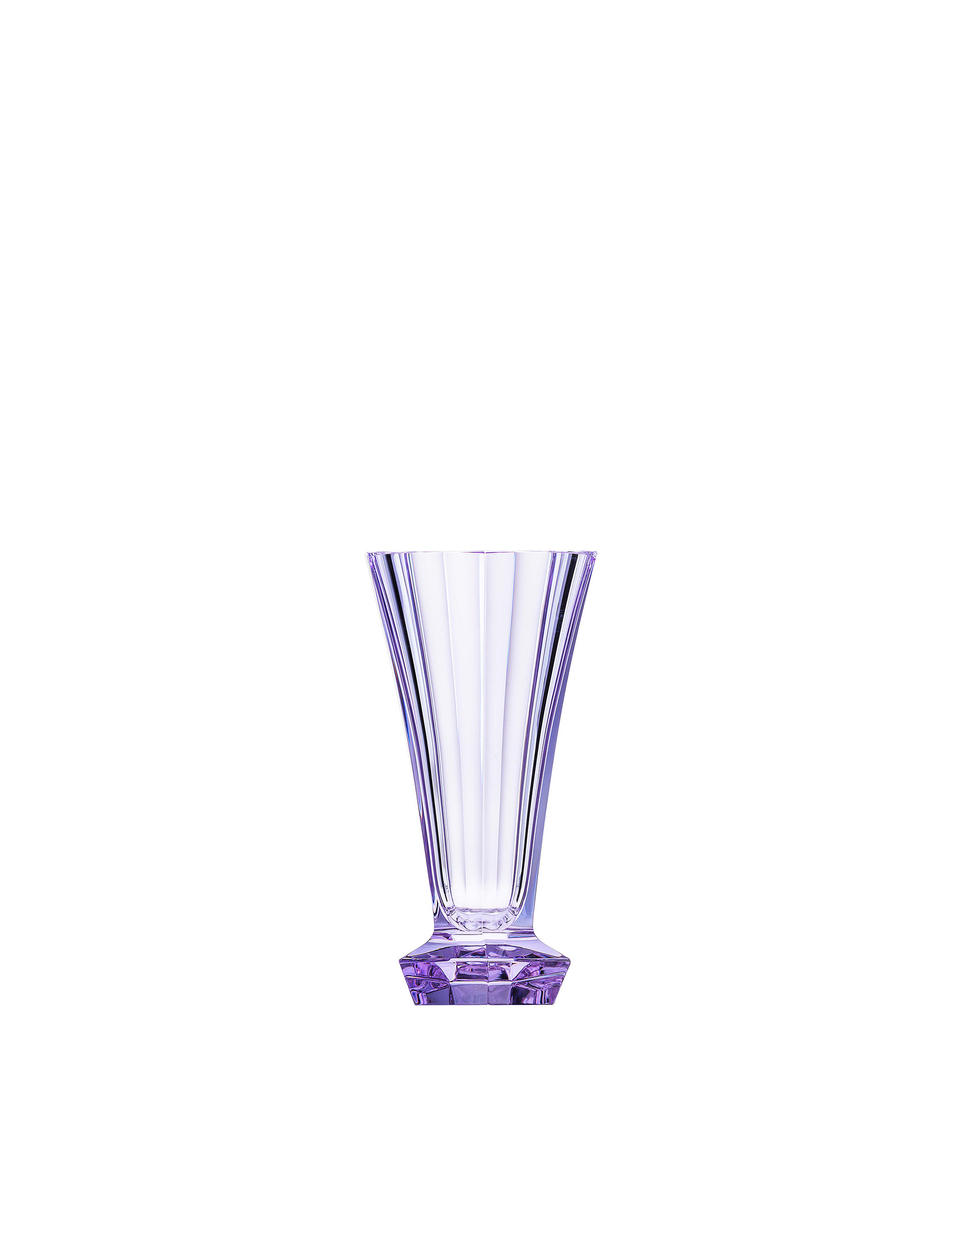 Unity vase, 11.5 cm